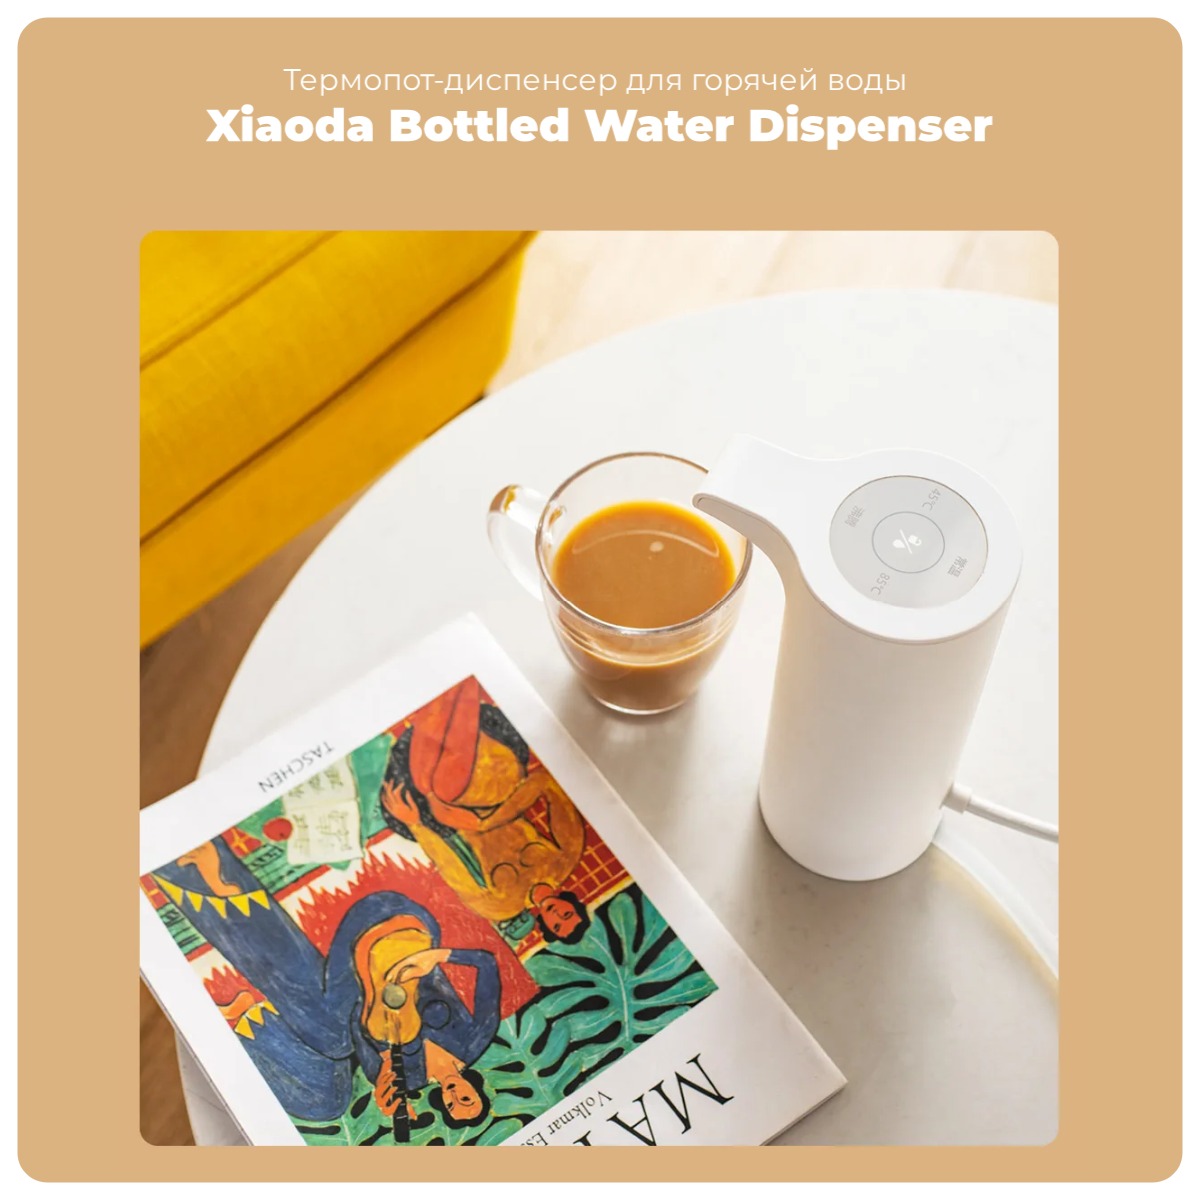 Xiaoda-Bottled-Water-Dispenser-XD-JRSSQ01-01